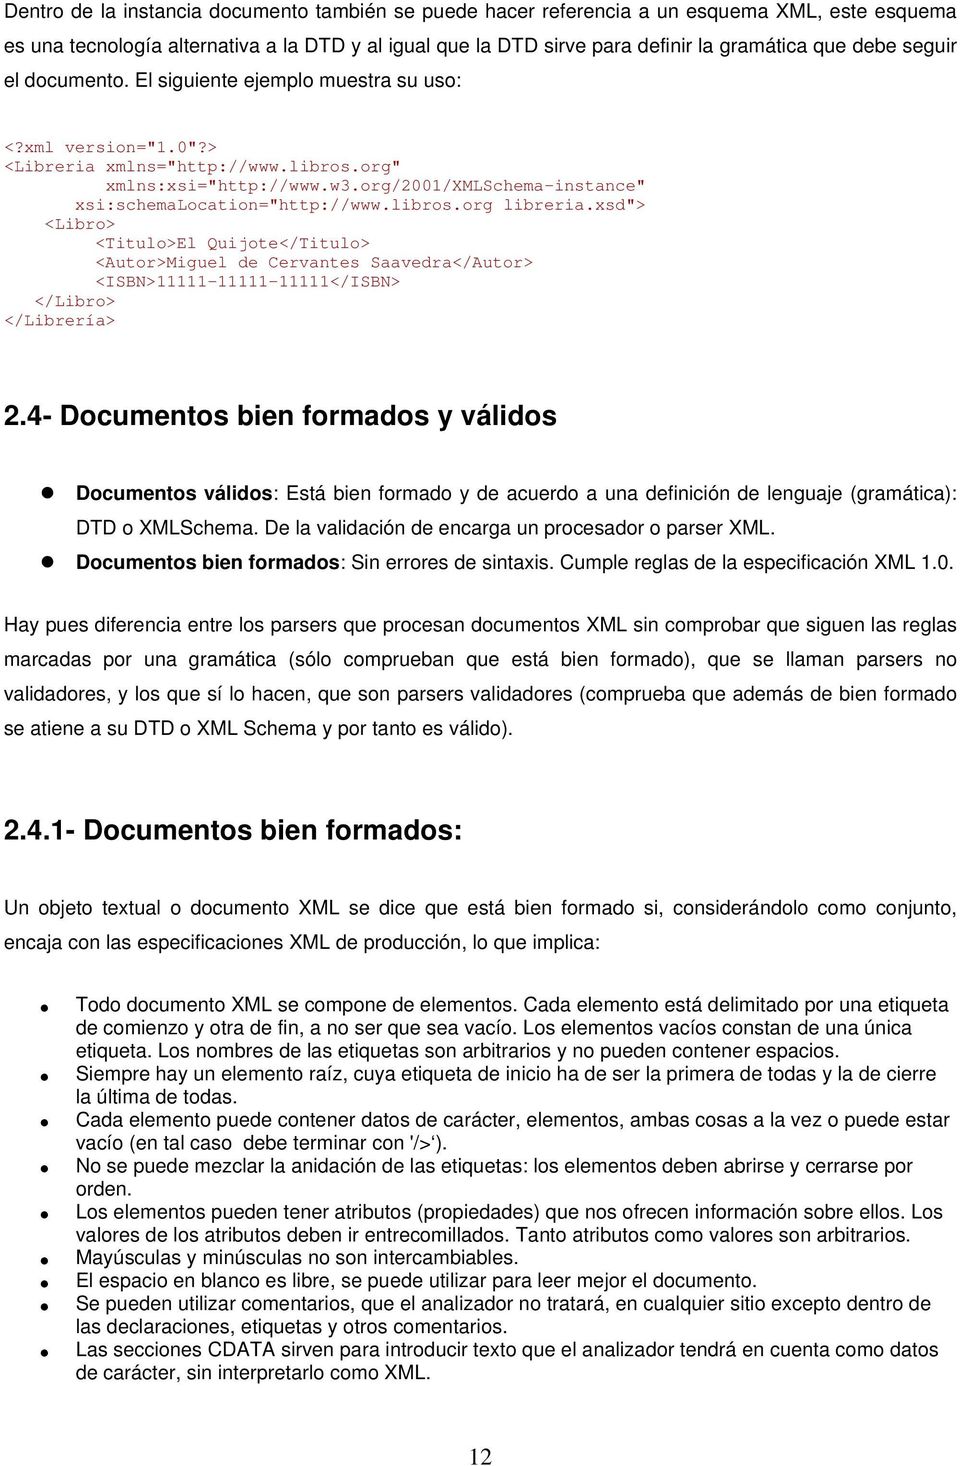 org/2001/xmlschema-instance" xsi:schemalocation="http://www.libros.org libreria.